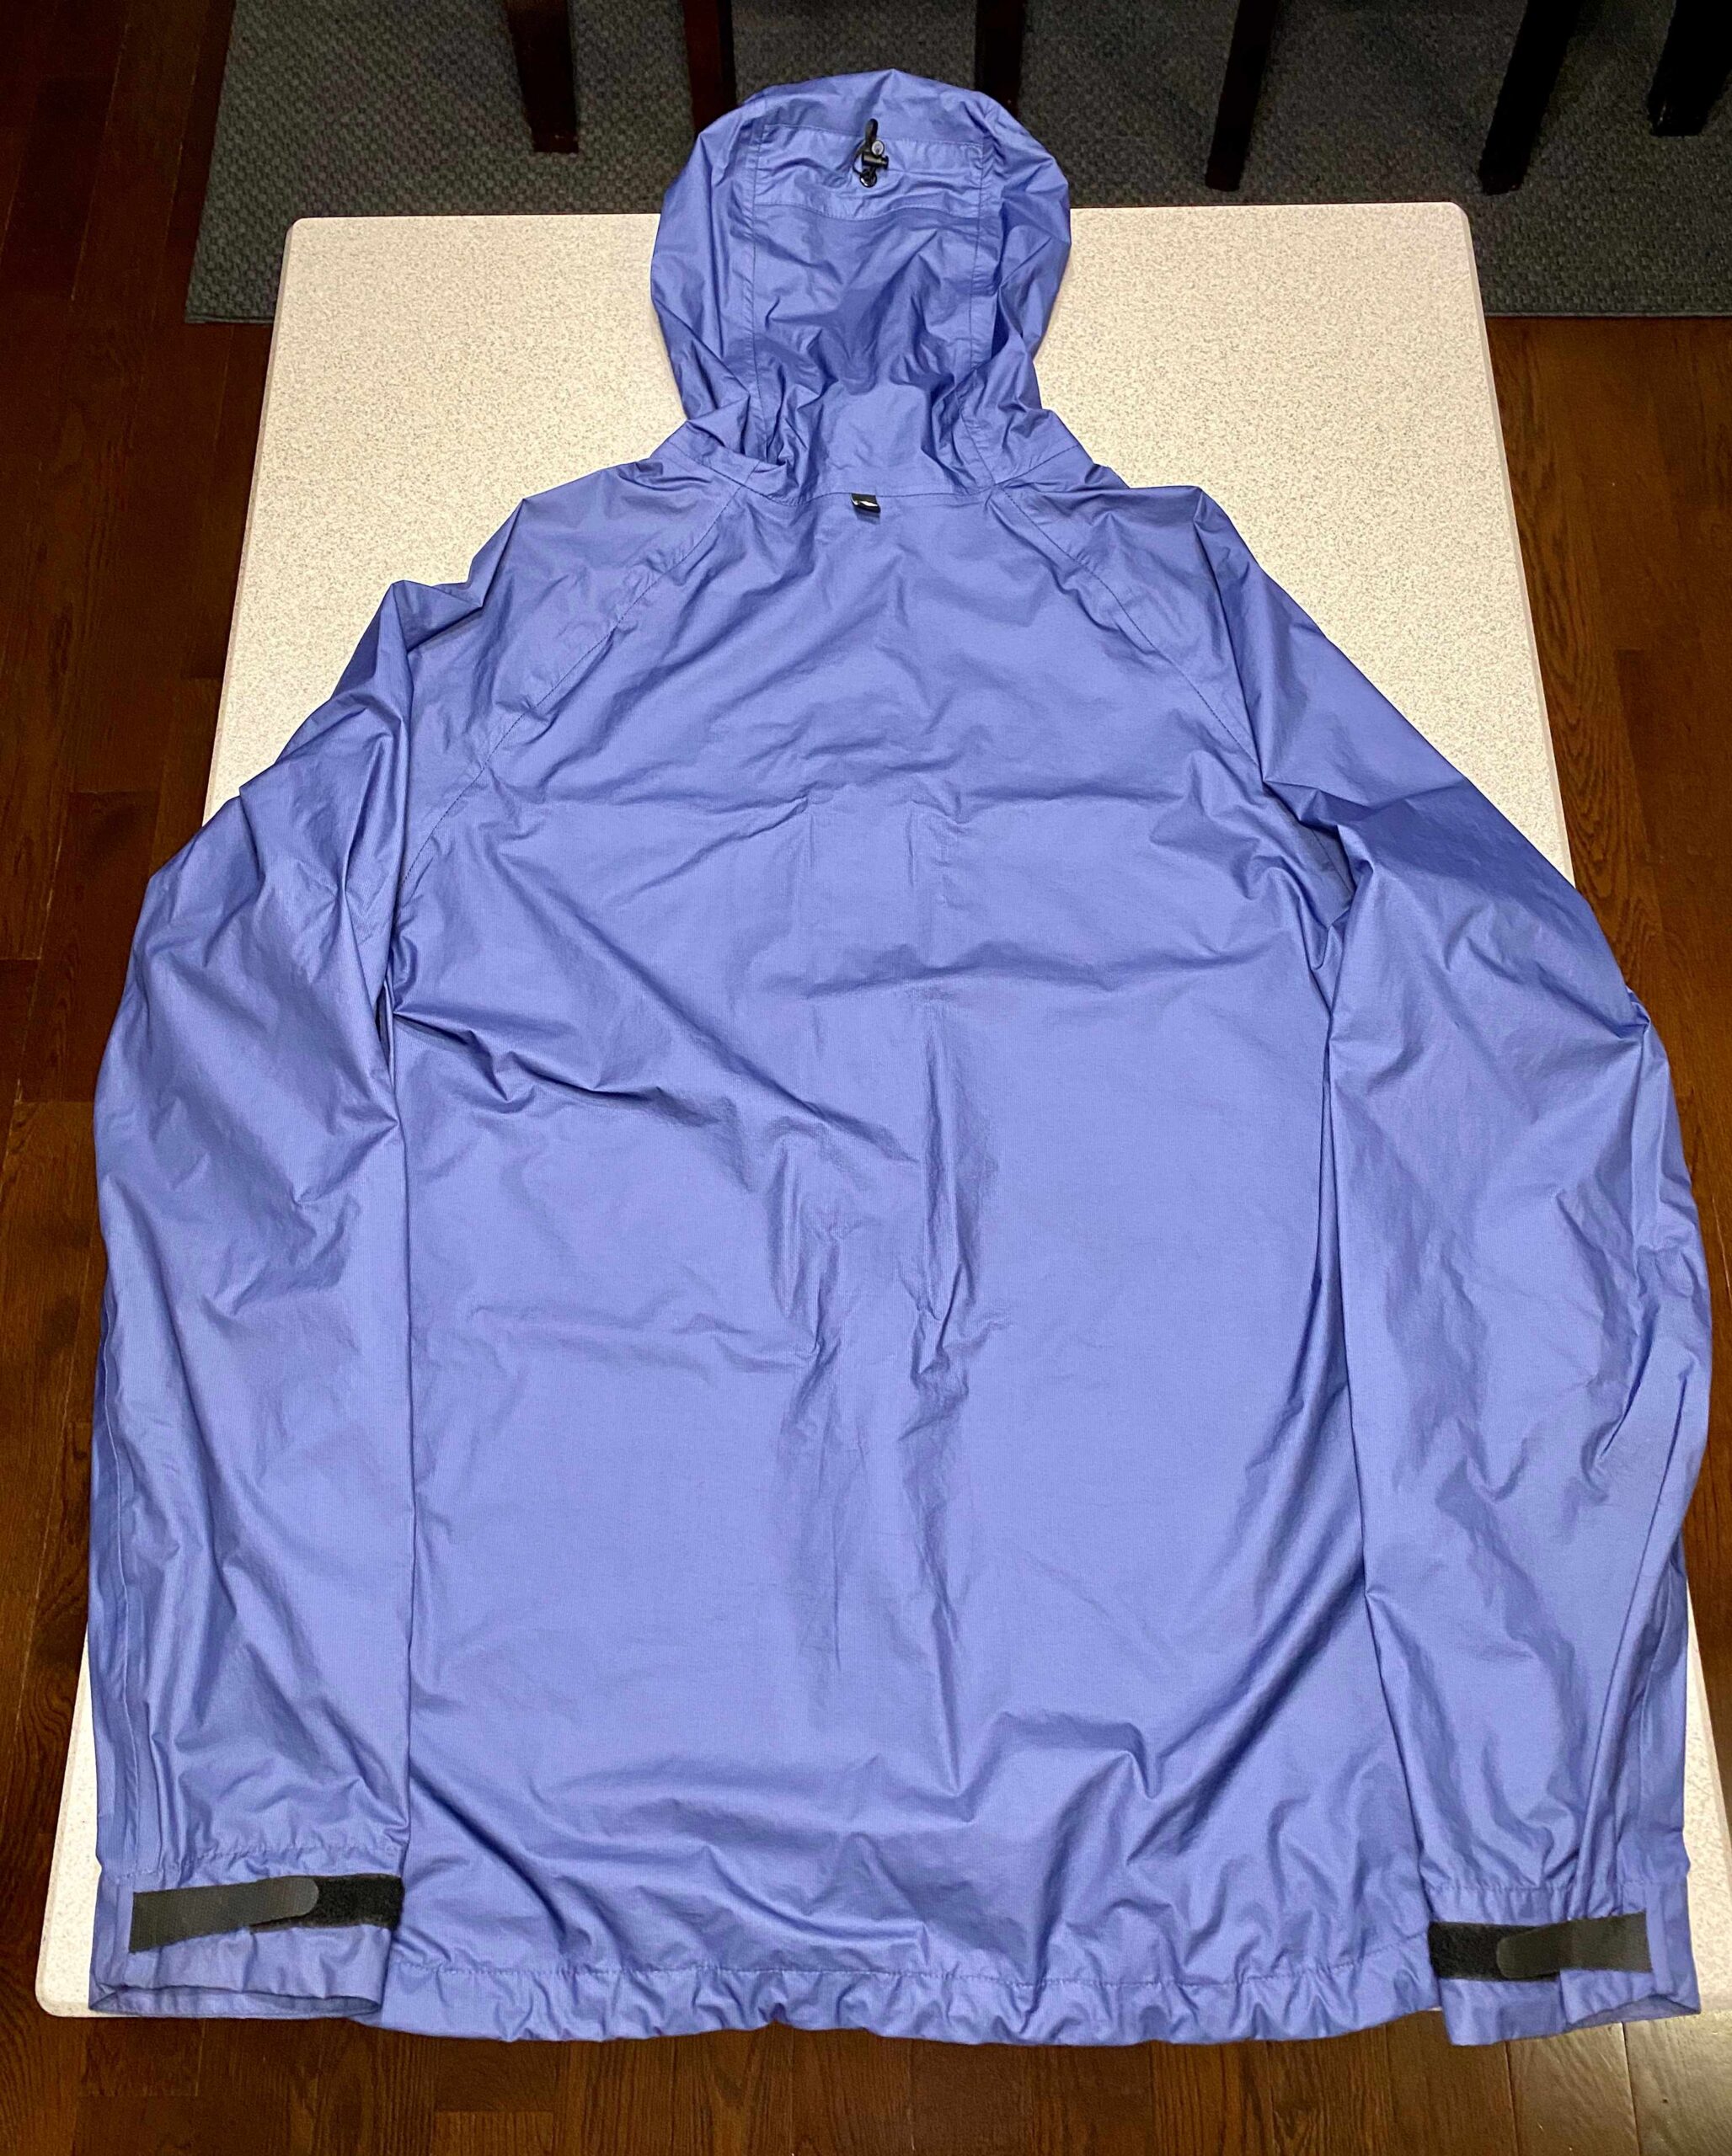 SOLD - Enlightened Equipment Visp Rain Jacket - Men's Medium - Blue - 5 ...